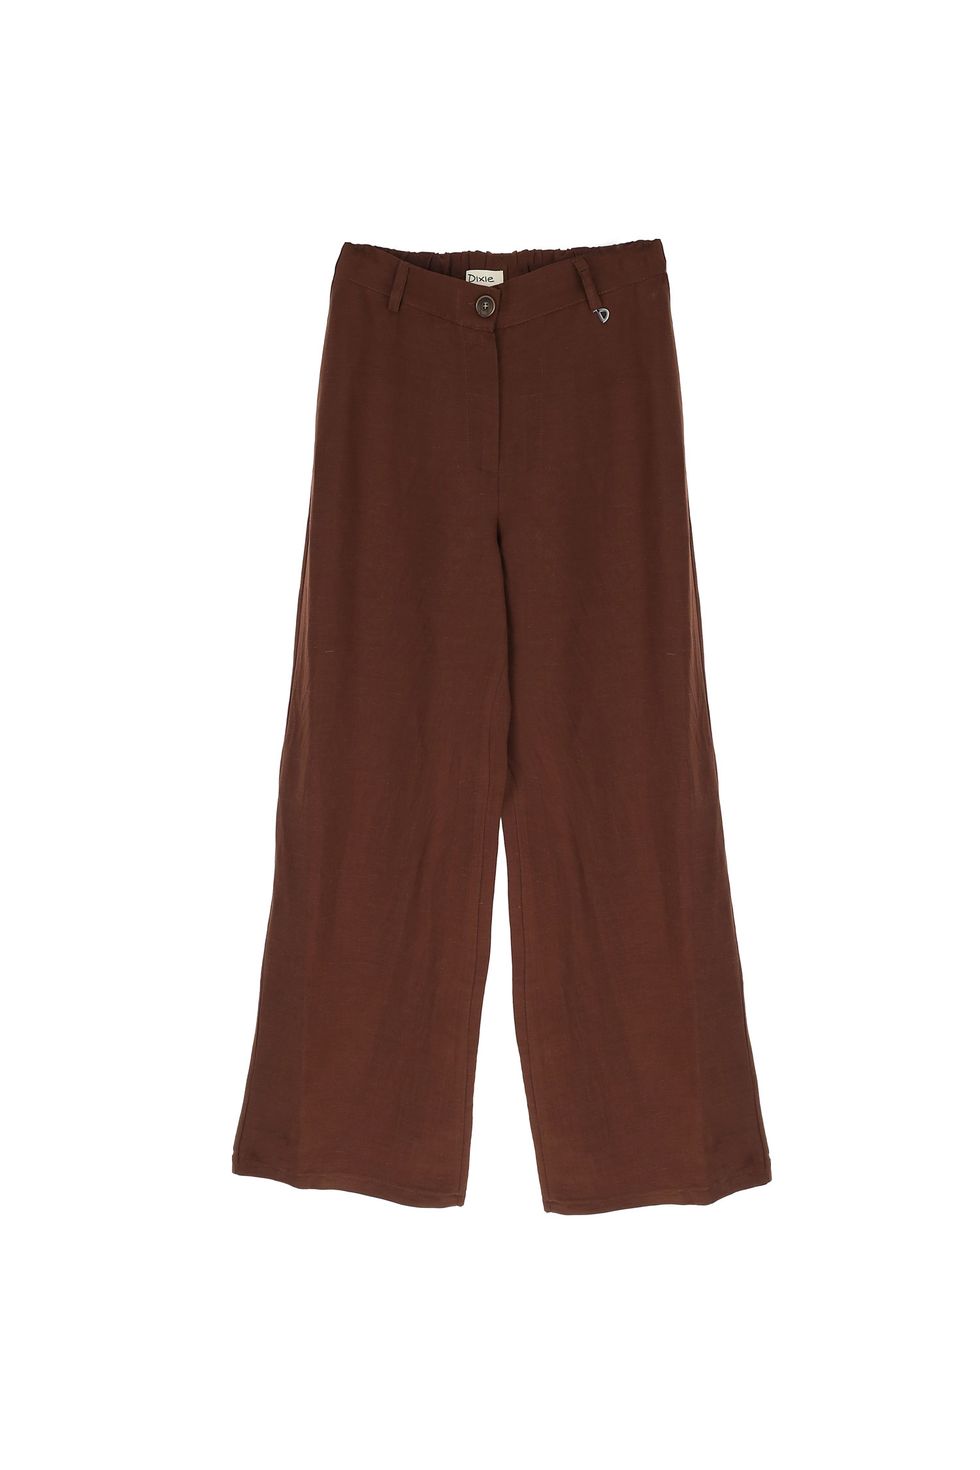 pantalón lino marrón chocolate dixie